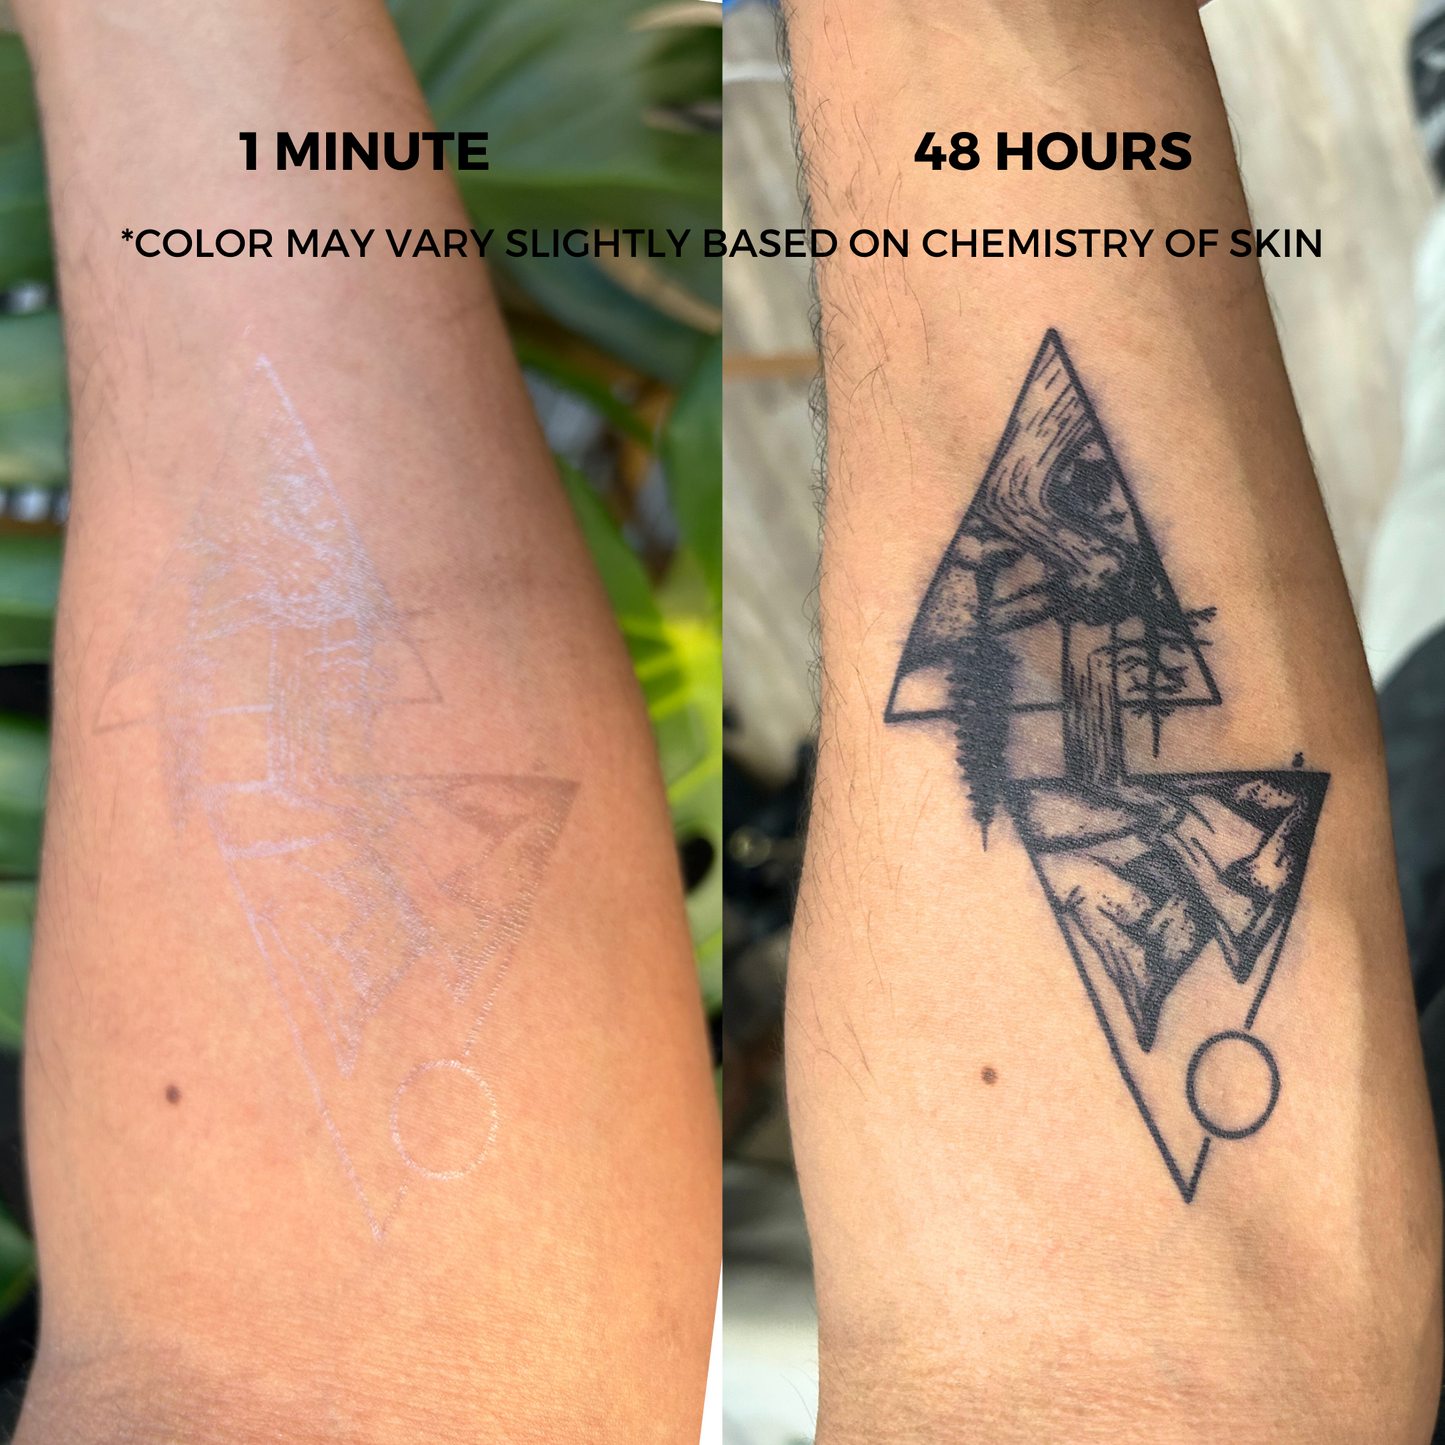 Finger Tattoo | 2 Week Temporary Tattoo | Plant Based Vegan Tattoo | Dainty Tattoo | Cute Tattoo | Festival Tattoo | Matching Tattoo | Gift Idea | Temporary Tattoo